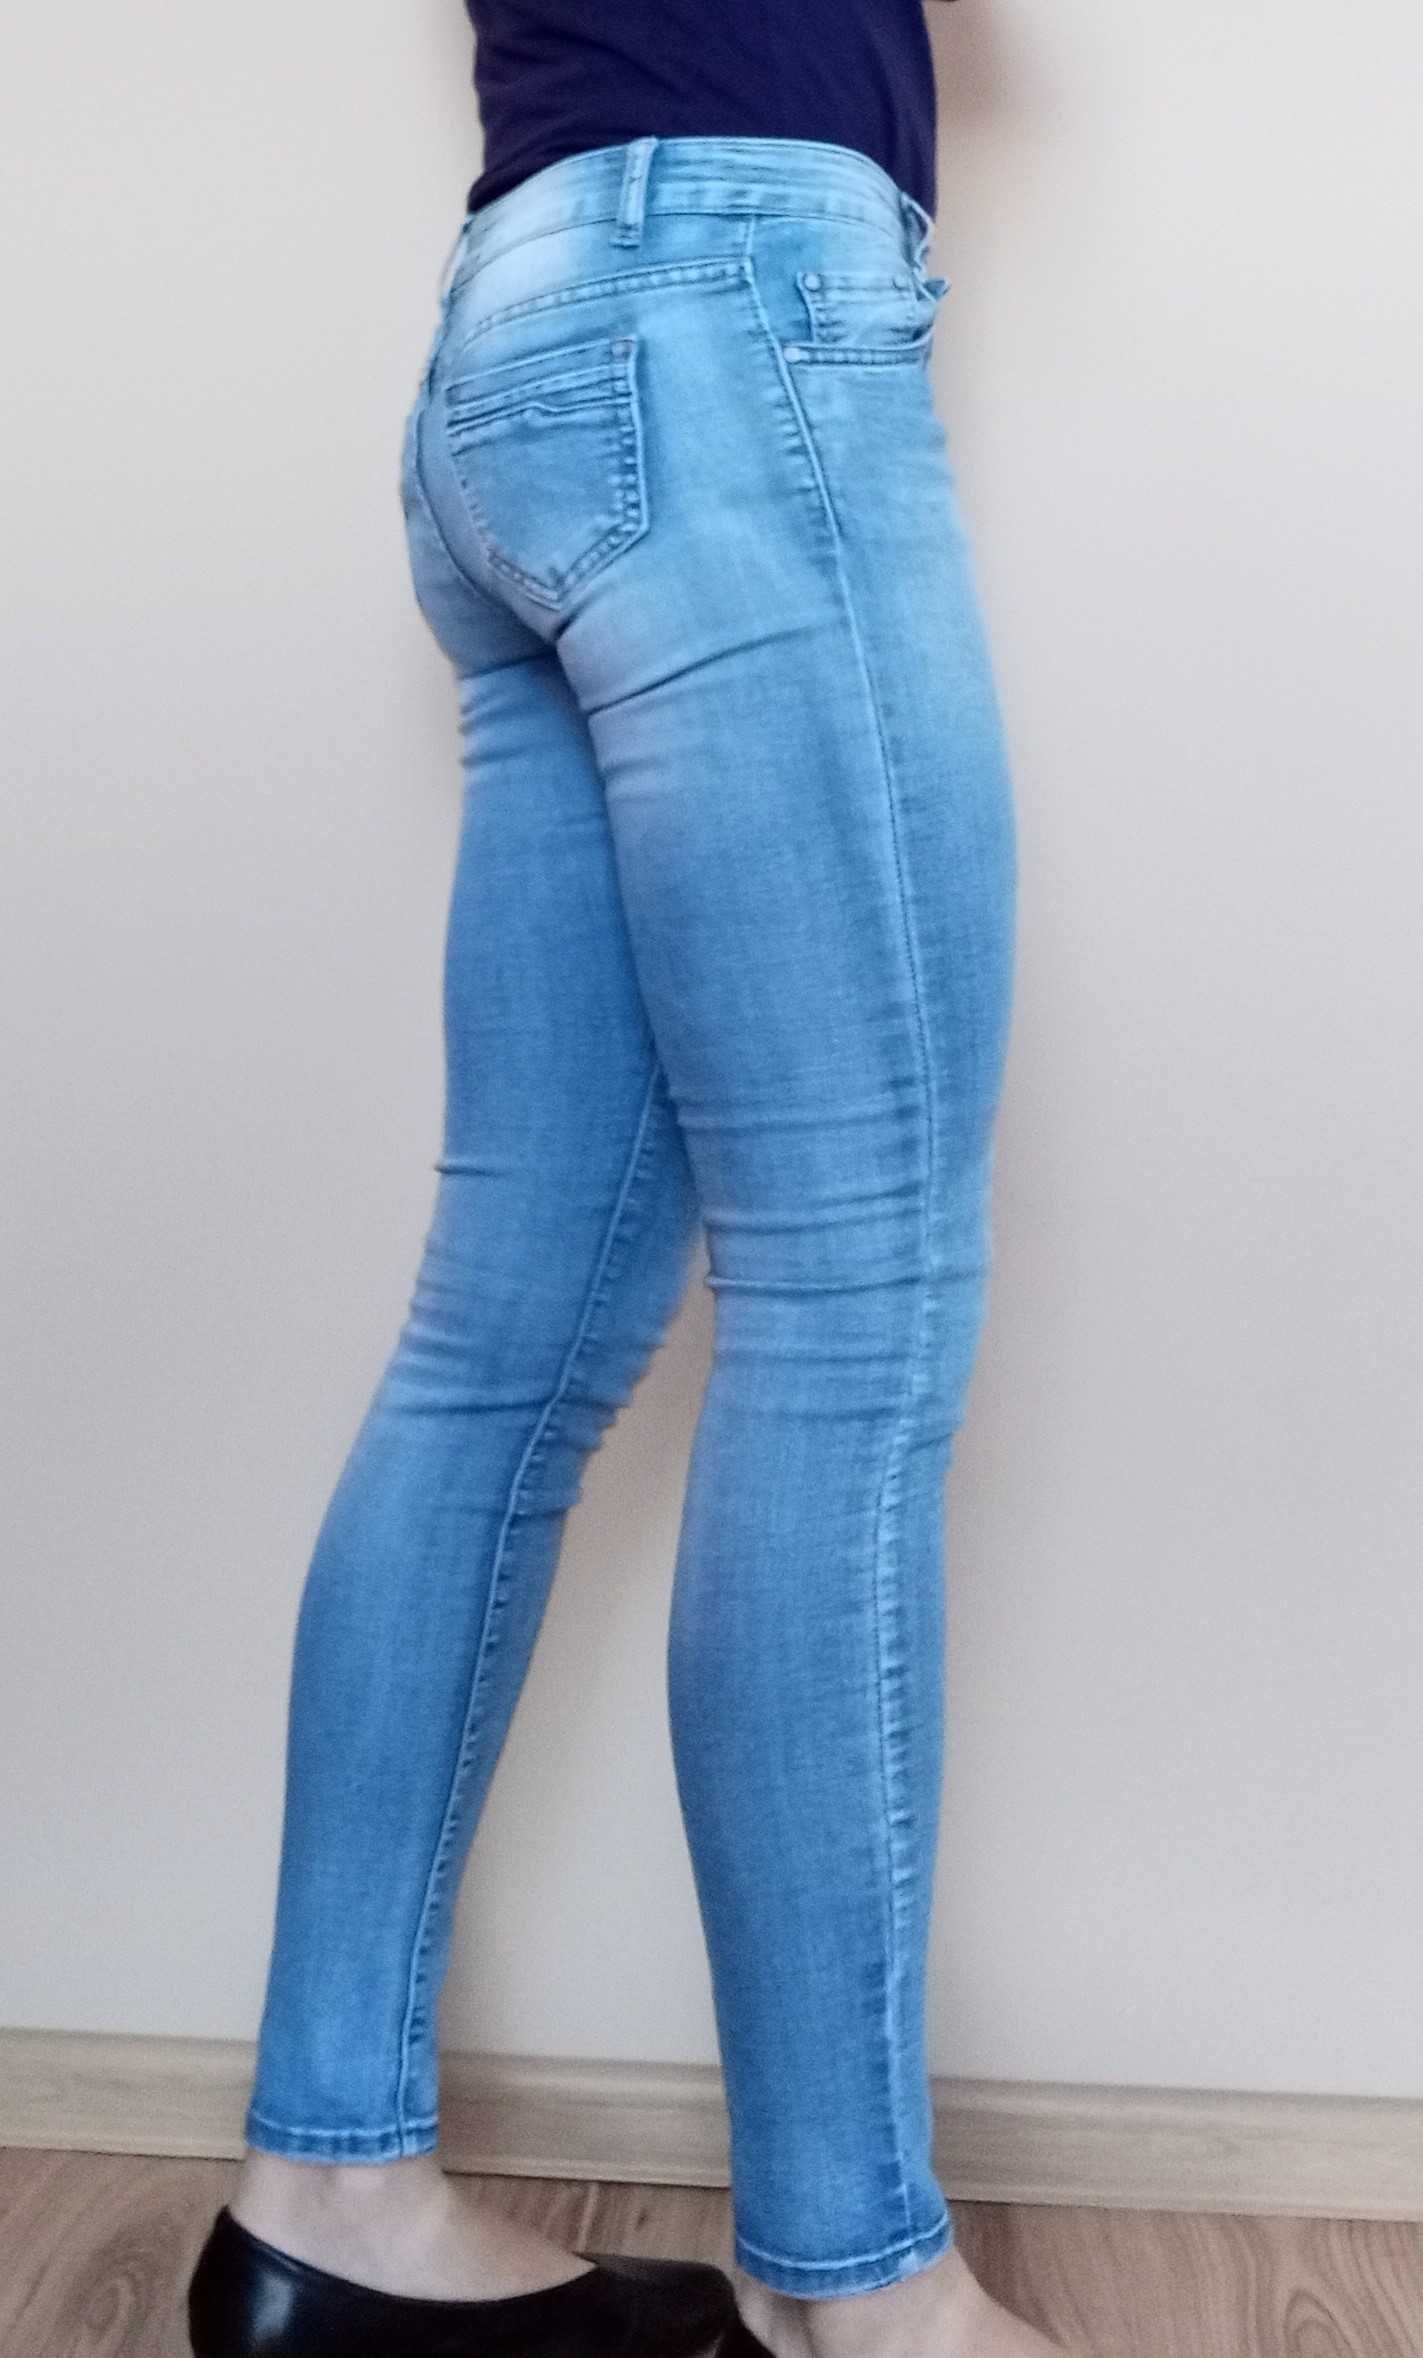 Skinny jeans 26 jasnoniebieskie z efektem sprania